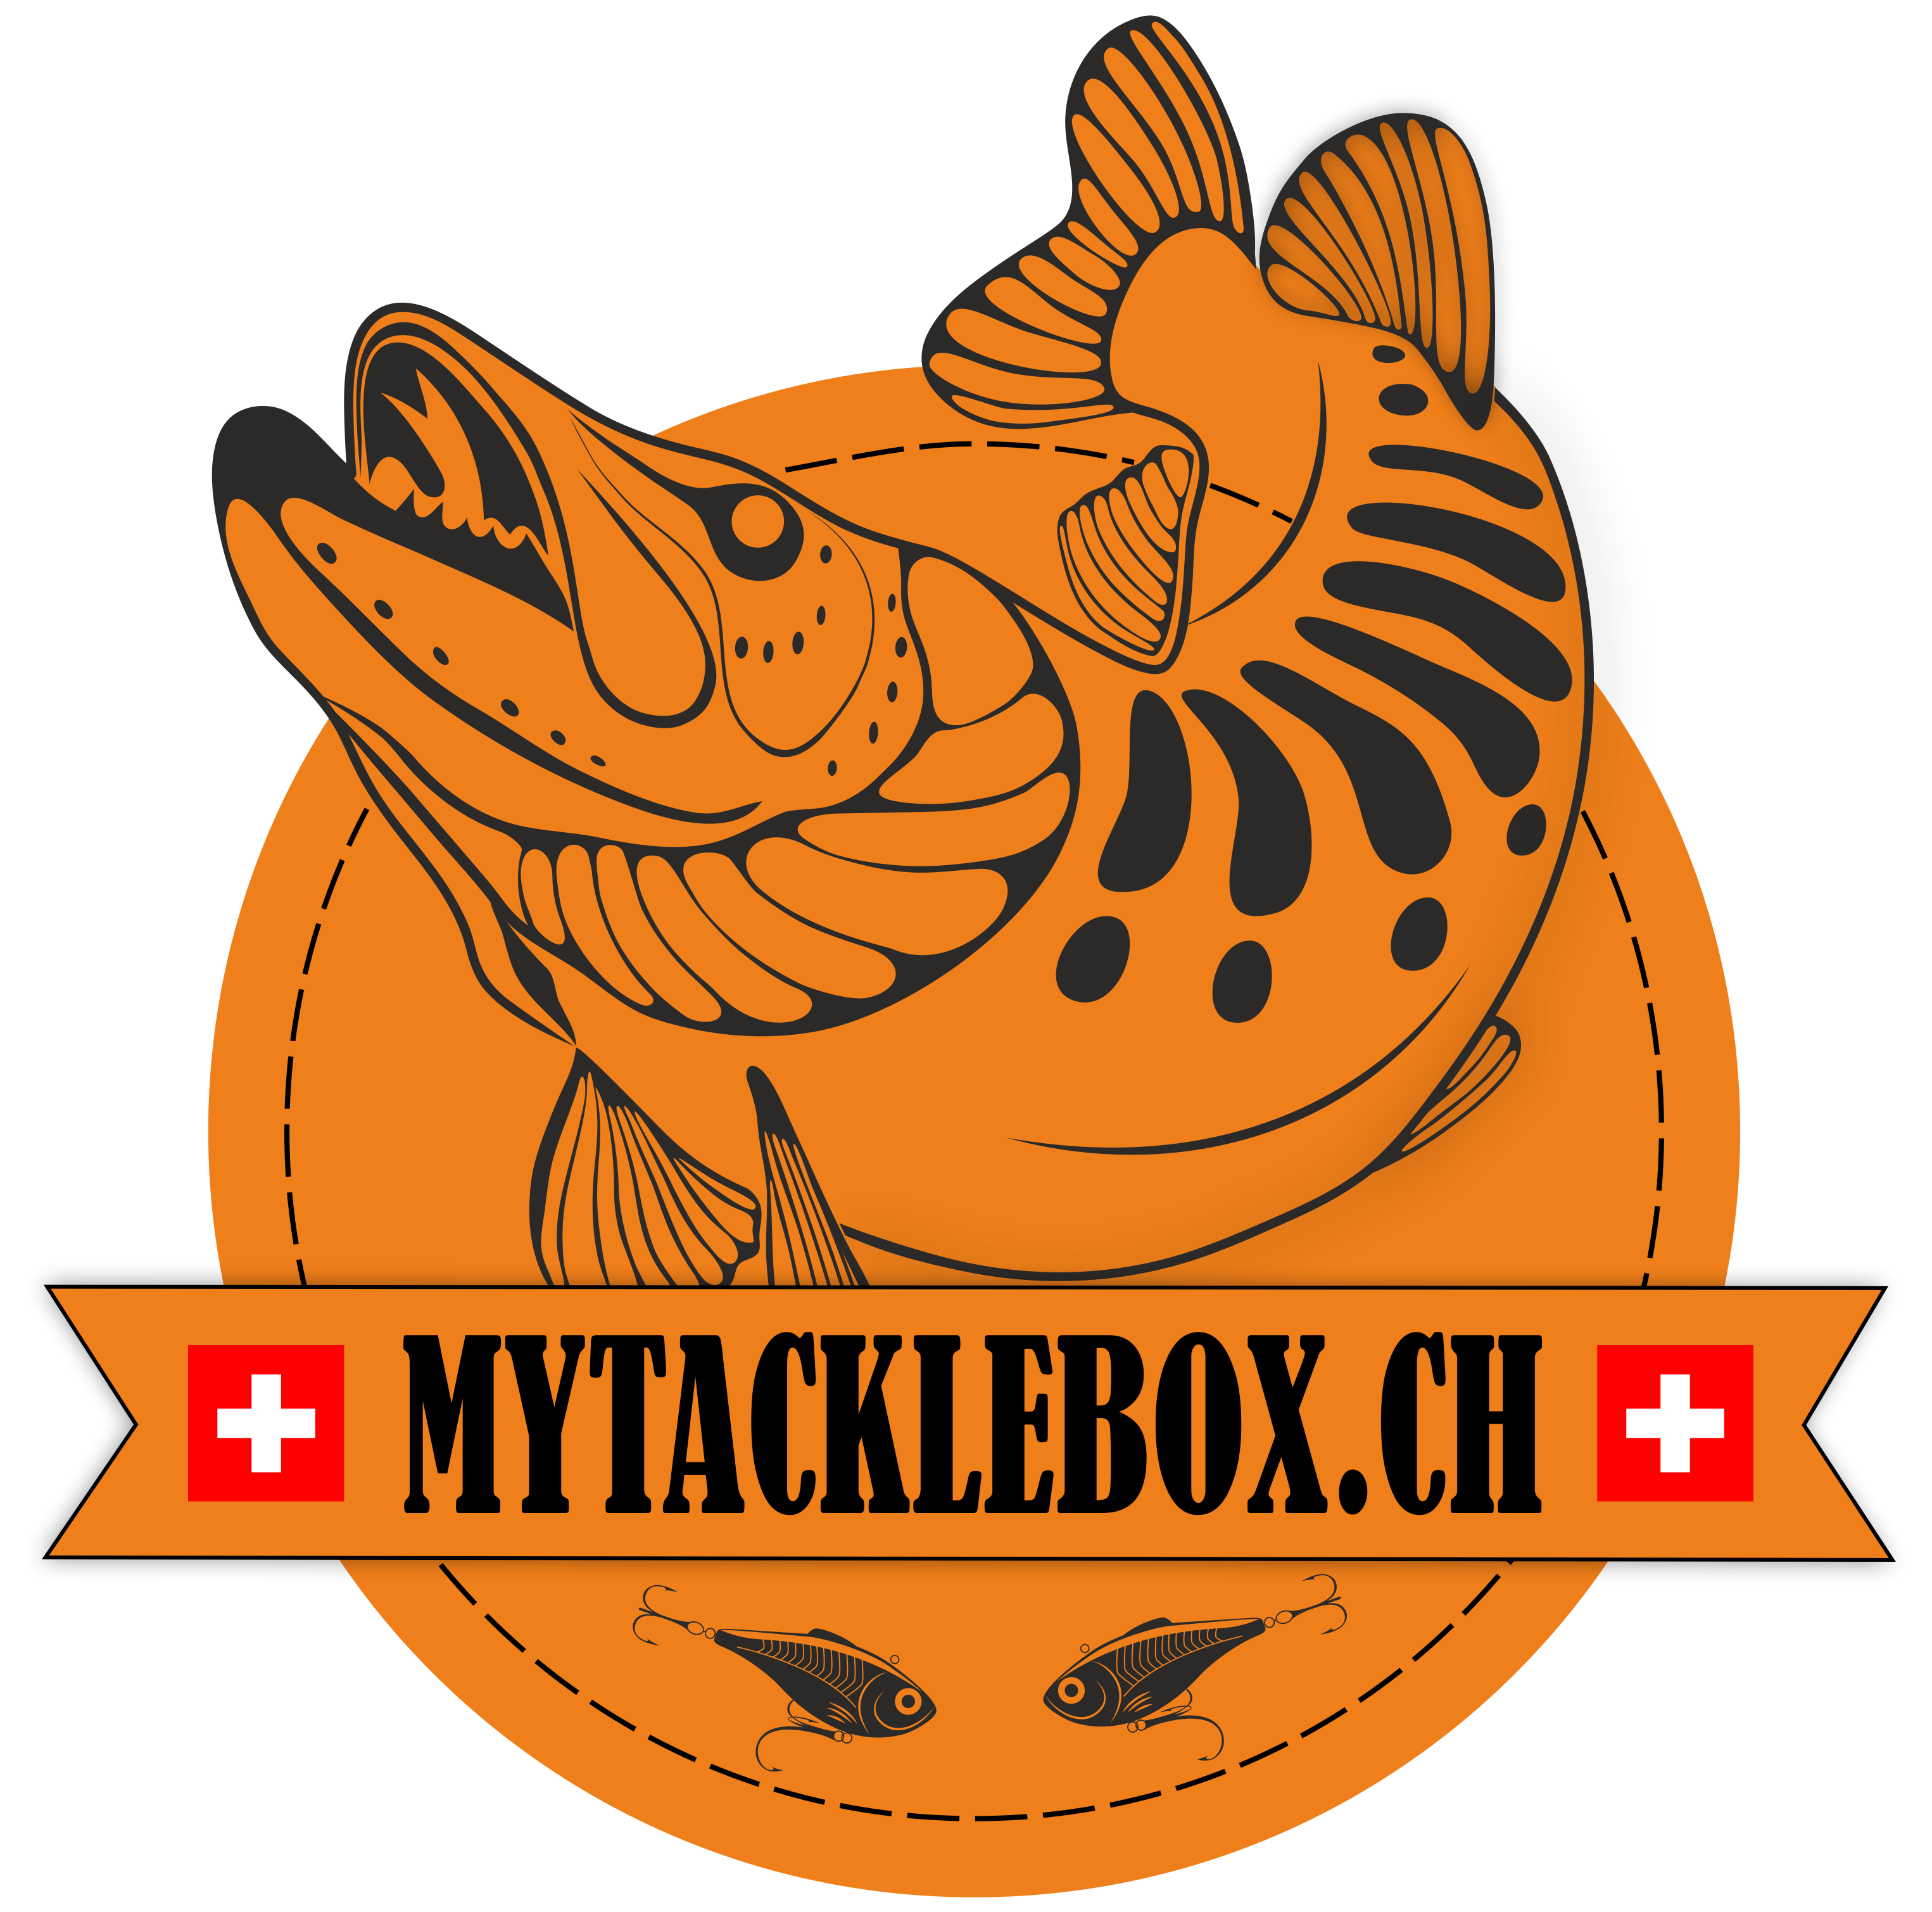 MyTackleBox.ch